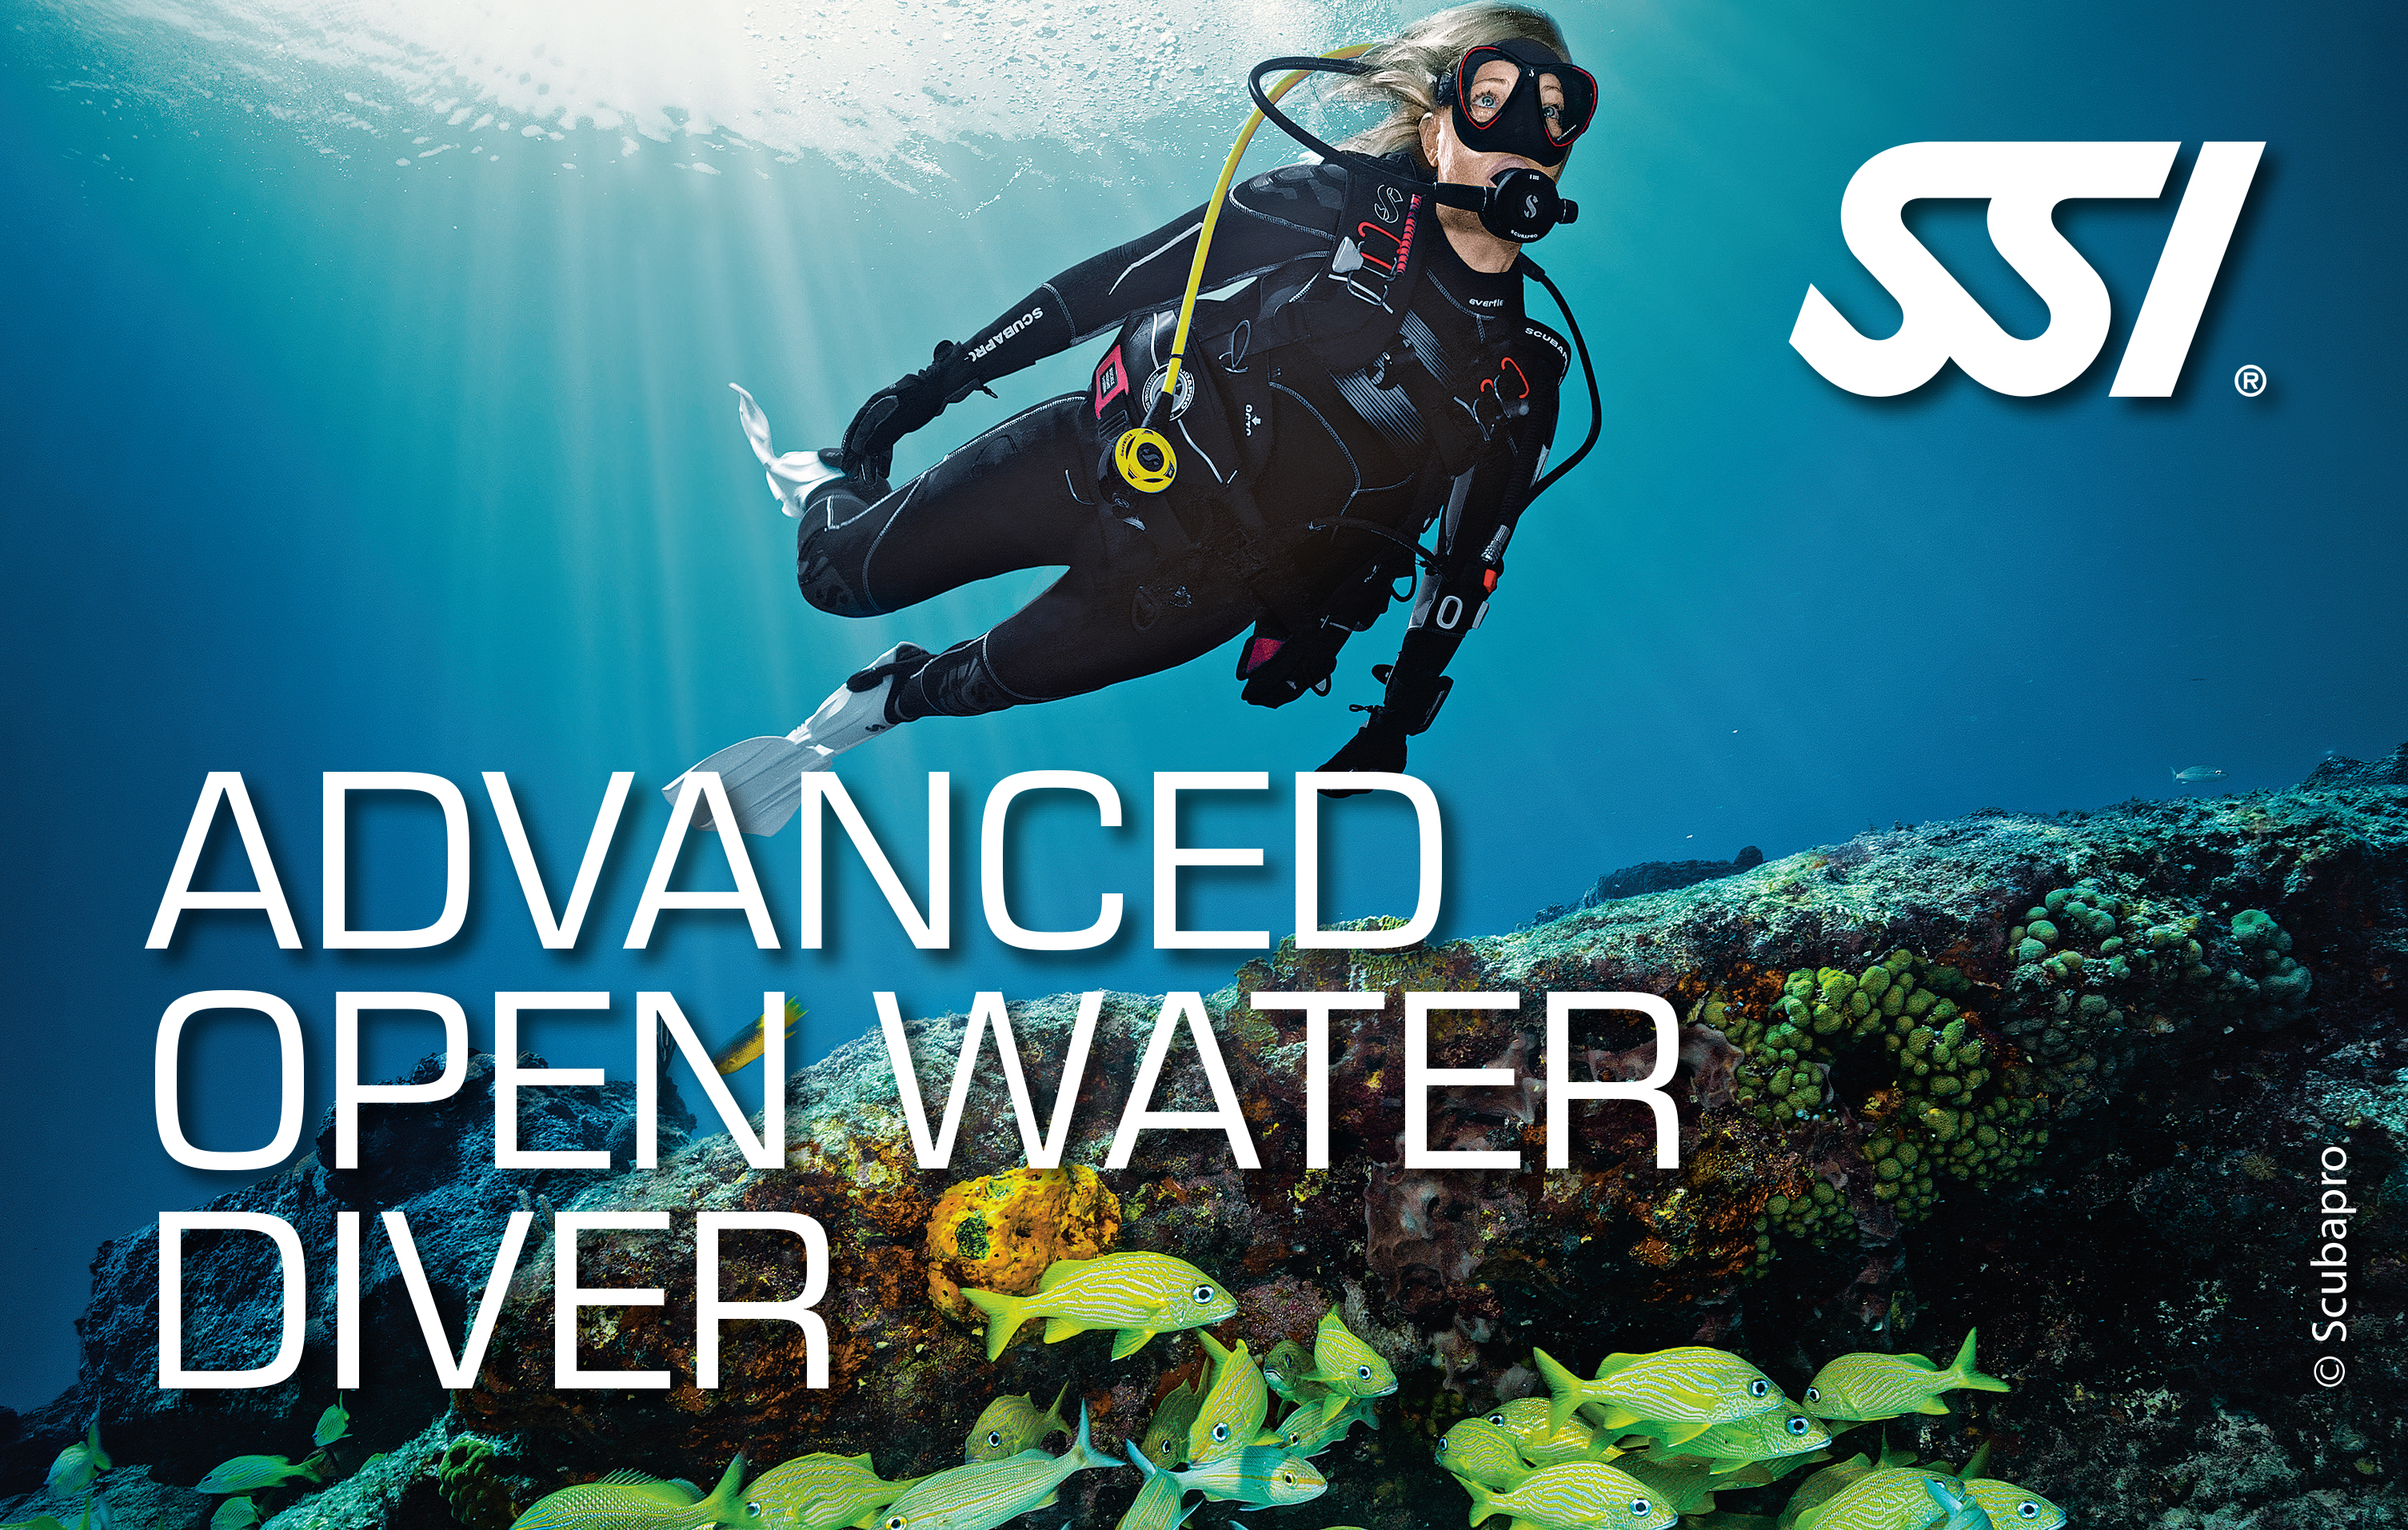 Advanced Open Water Diver SSI Into The Sea ASD